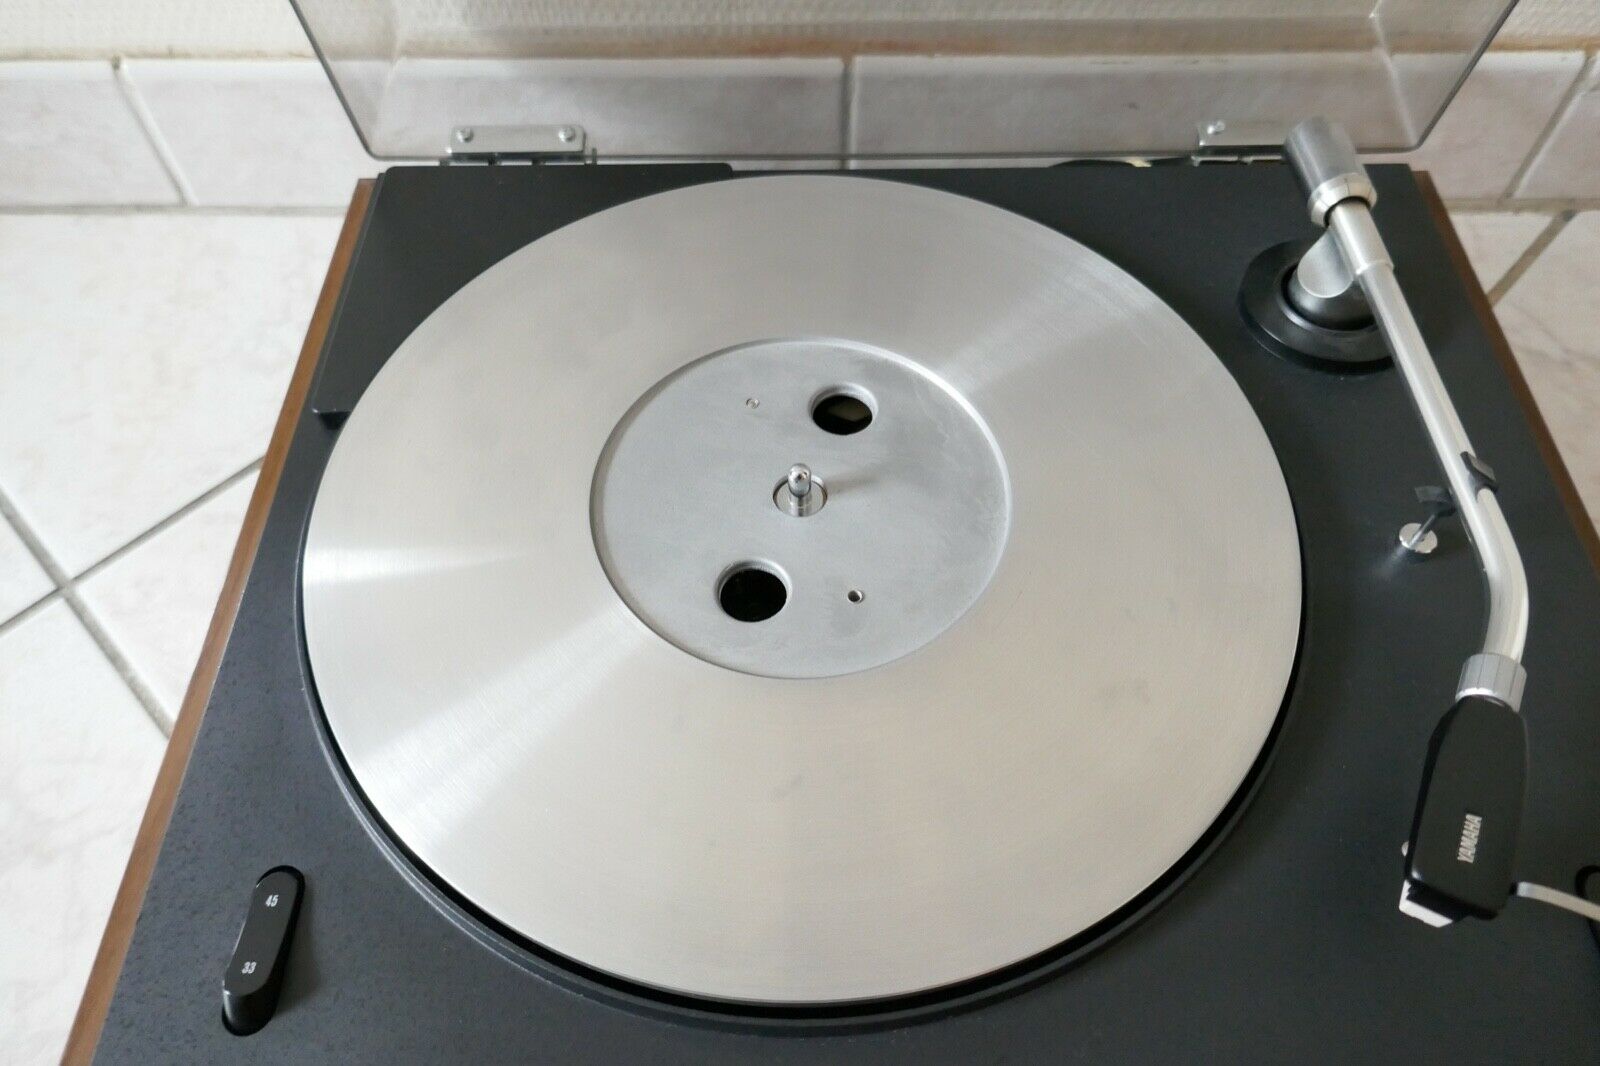 platine vinyle turntable yamaha CS-50P vintage occasion